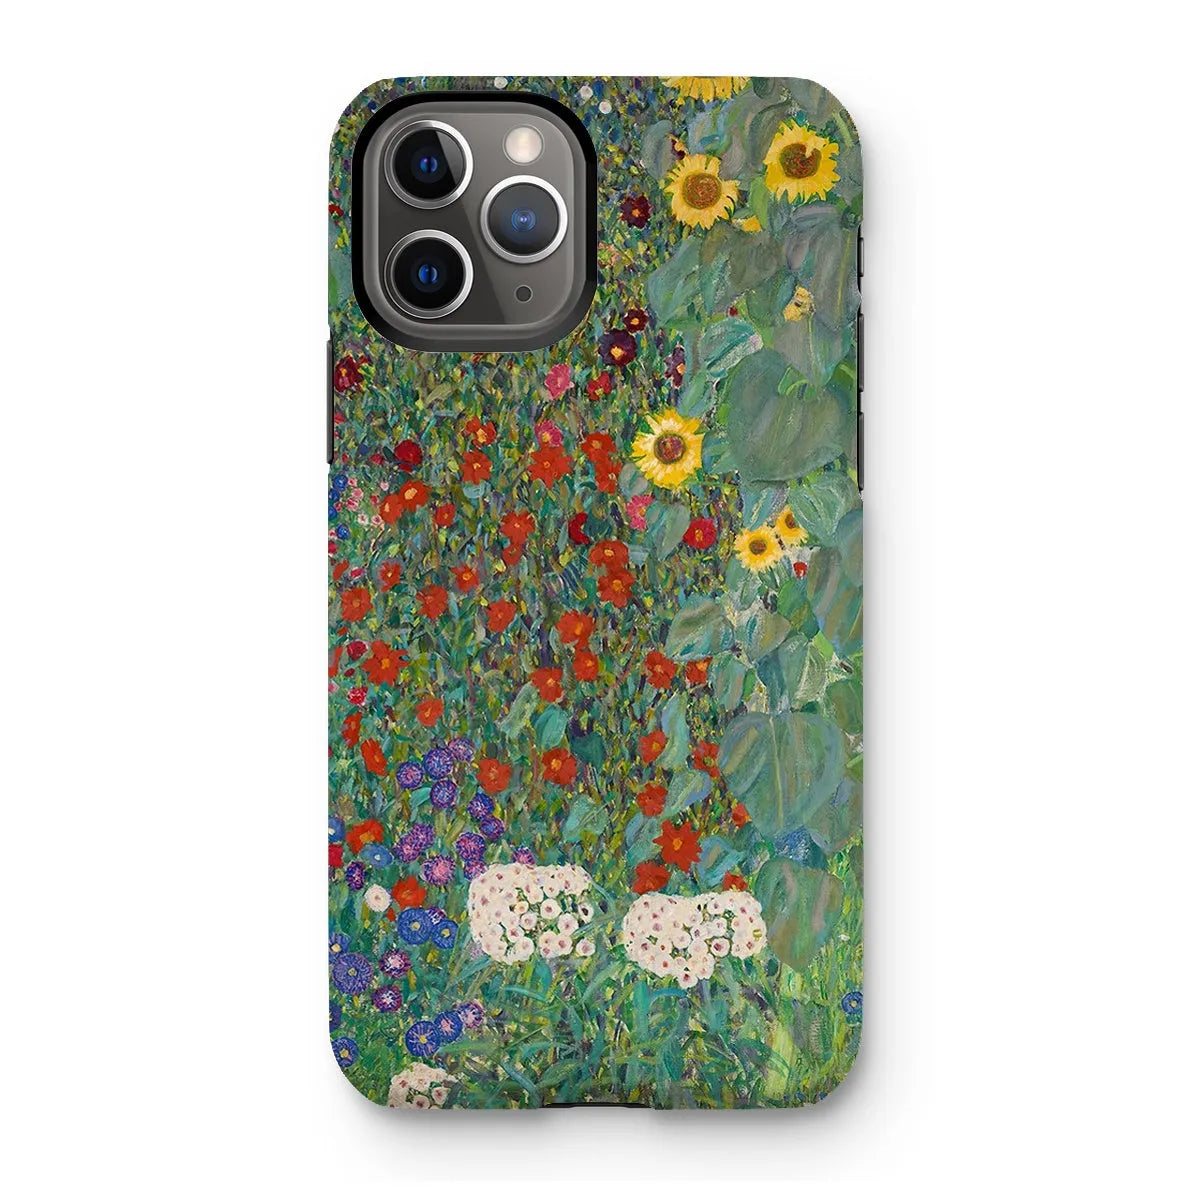 Farm Garden With Sunflowers Art Phone Case - Gustav Klimt - Iphone 11 Pro / Matte - Mobile Phone Cases - Aesthetic Art